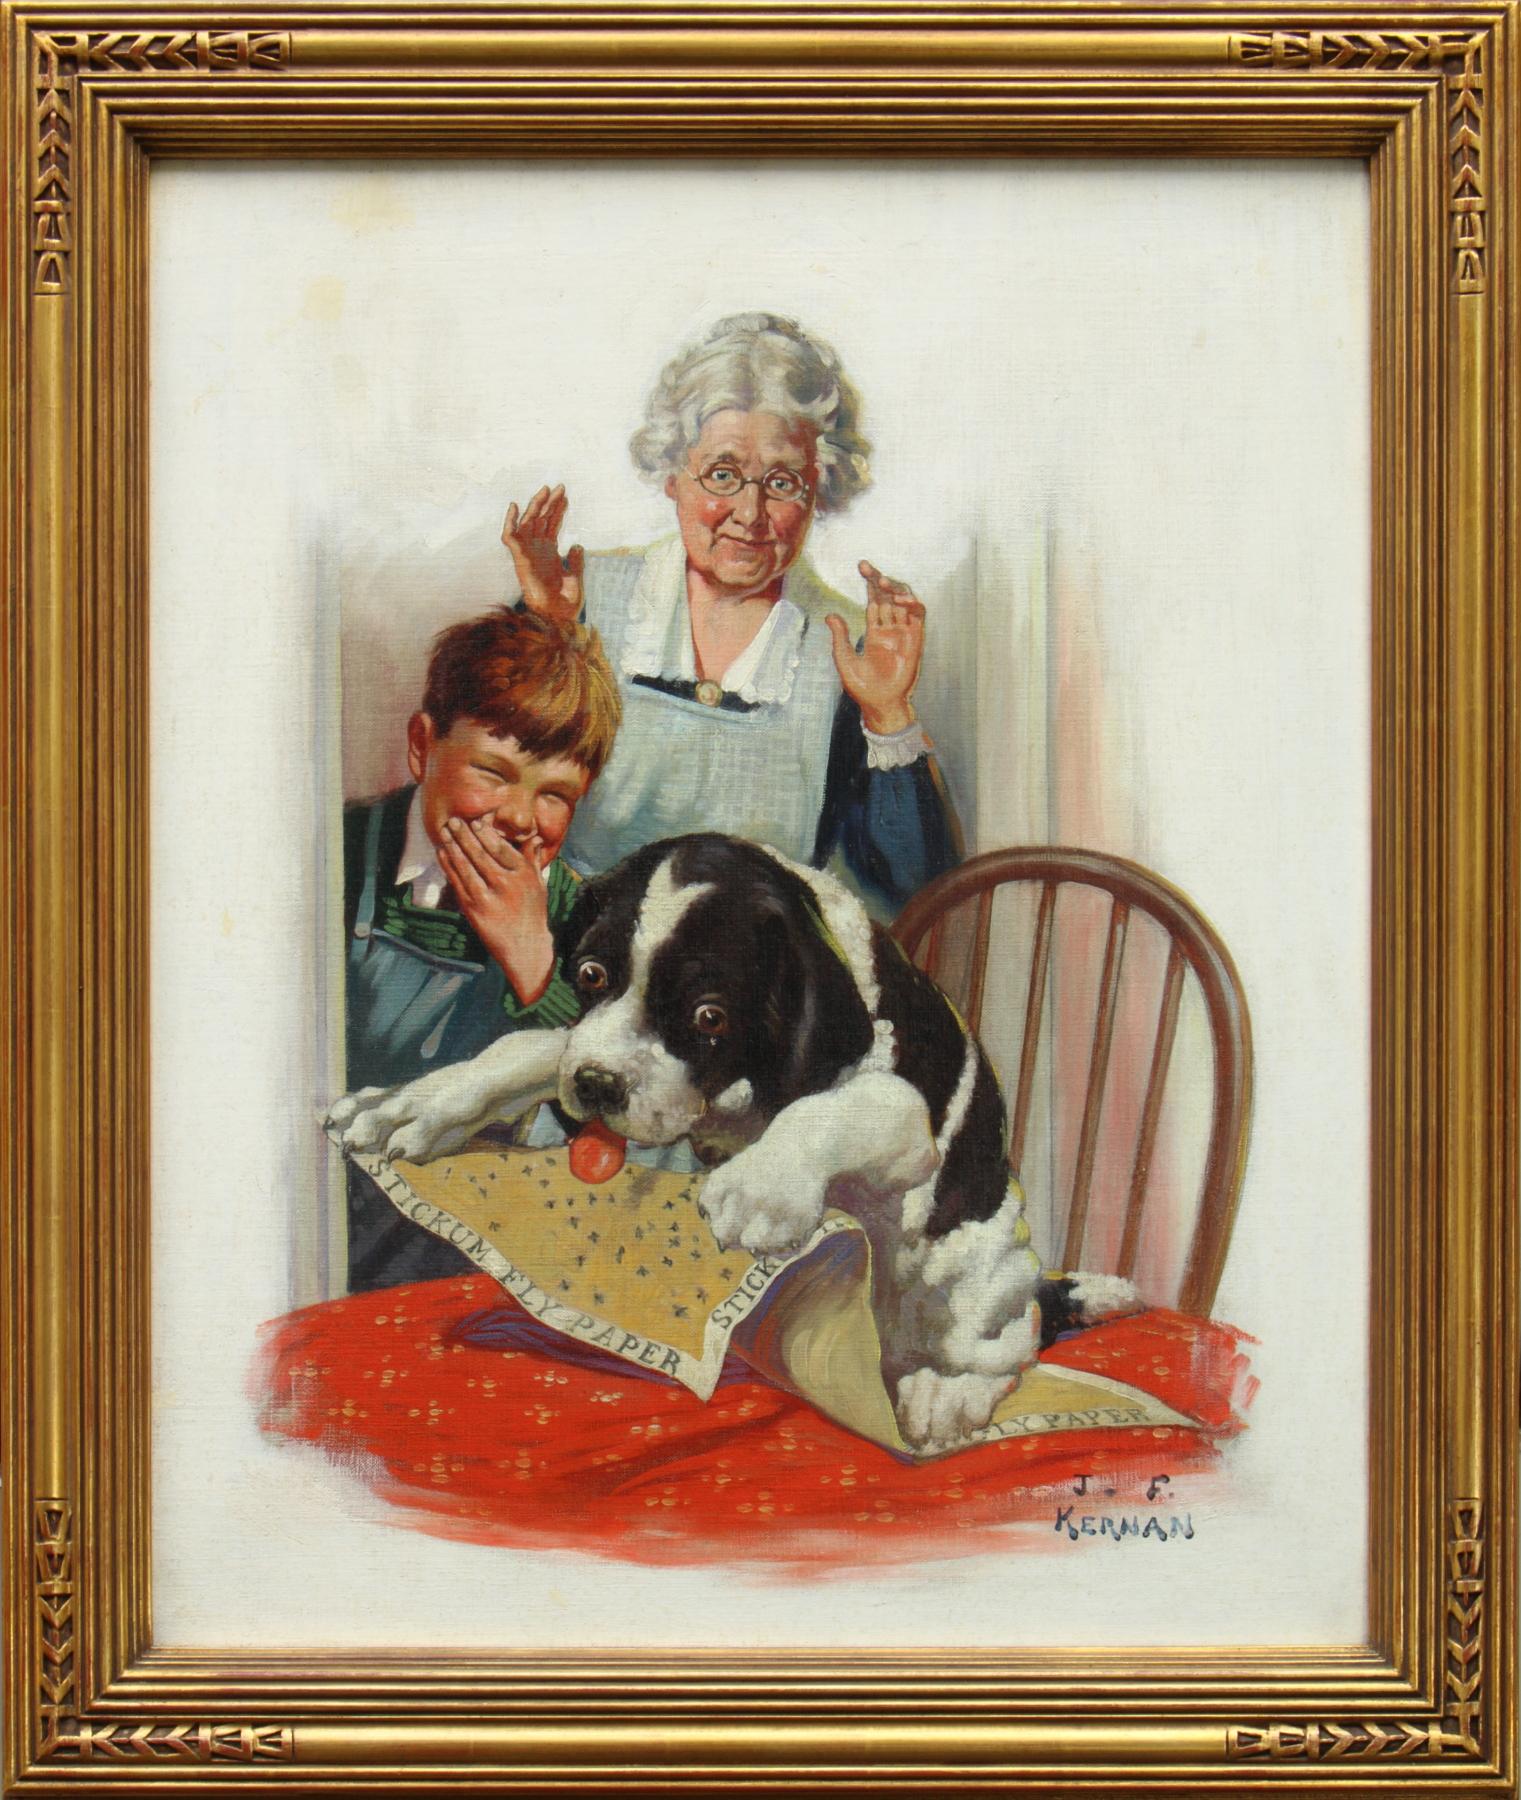 Großer Großvater, Junge und Hund – Painting von Joseph Francis Kernan